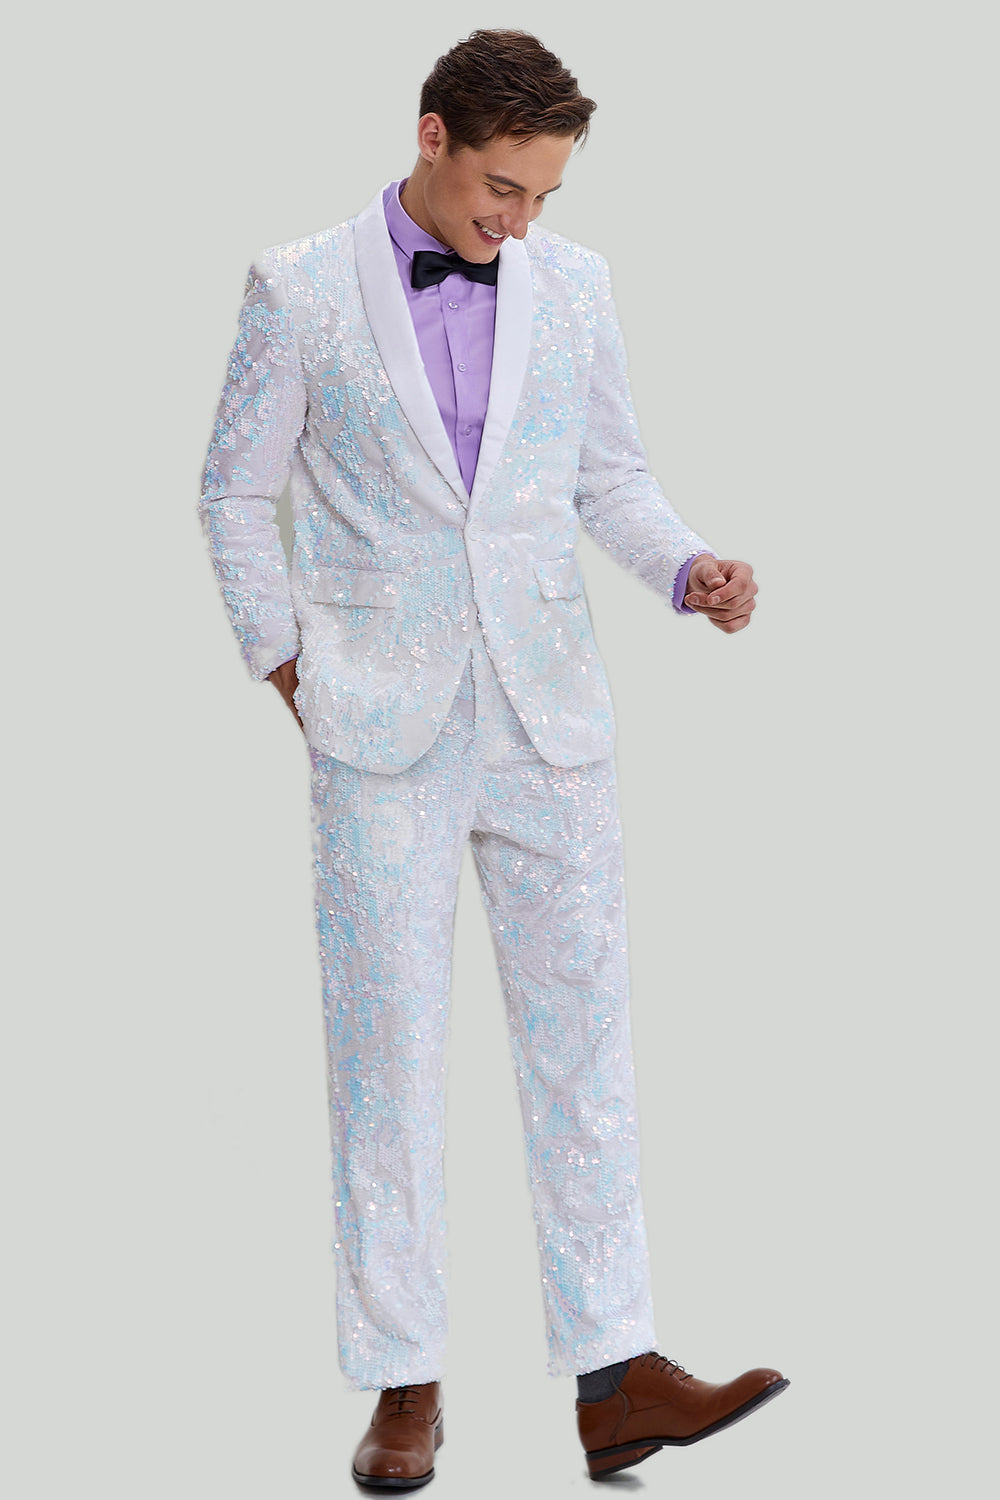 Men's Slim Fit 2 Piece Suit One Button Shawl Lapel Tuxedo for Wedding